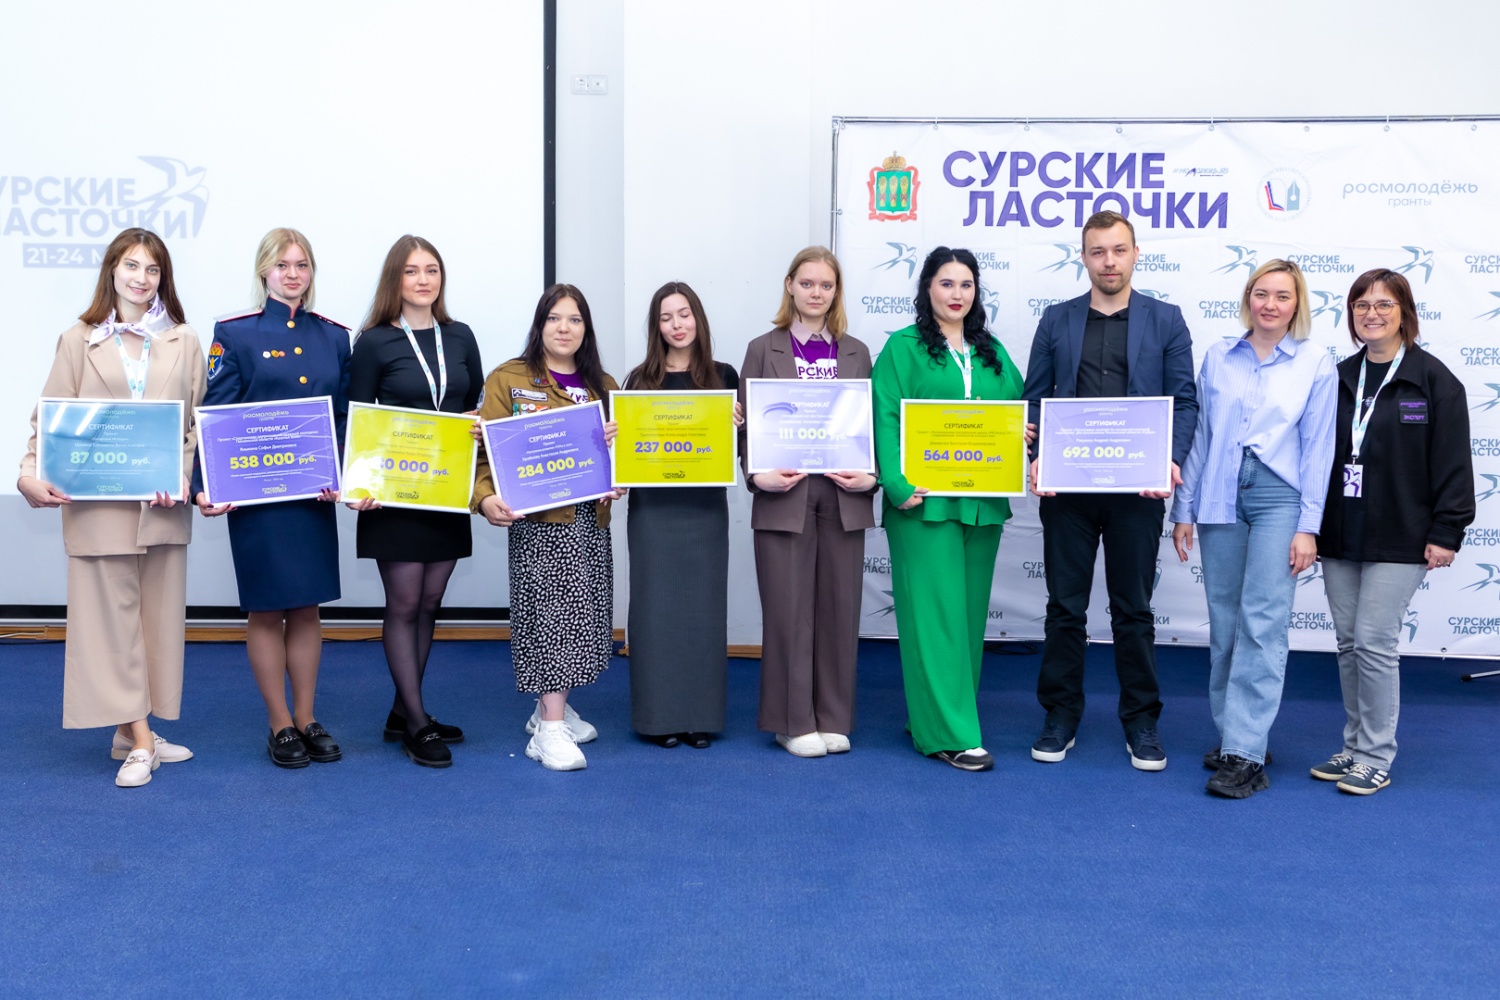 В Пензенской области подошел к концу молодежный форум "Сурские ласточки" - 2024